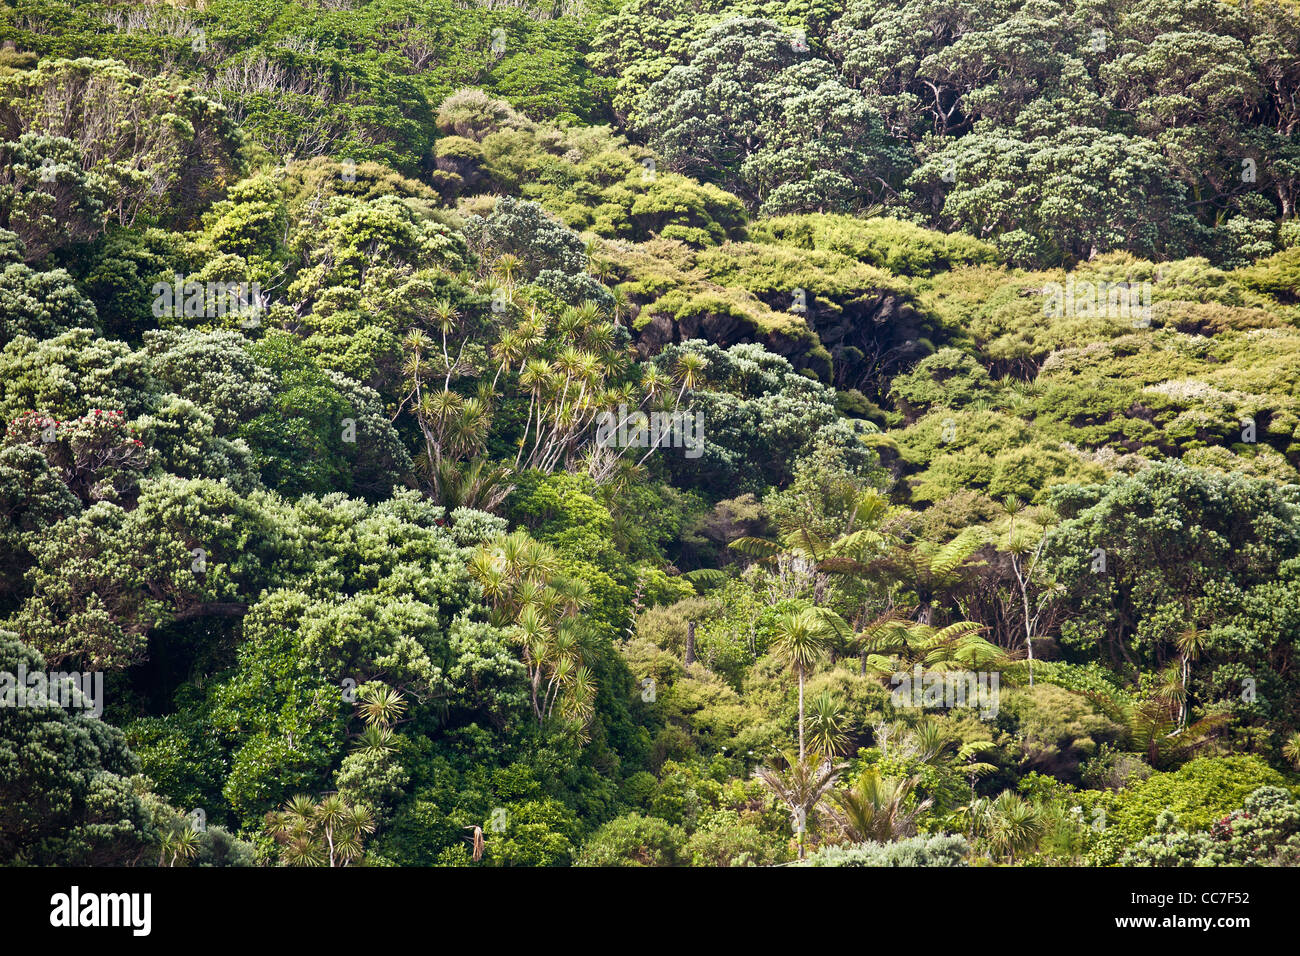 Nouvelle-zélande sauvage forêt de l'arbre de thé et d'une repousse de kauri Waitakere Ranges national park Auckland New Zealand North Island Banque D'Images